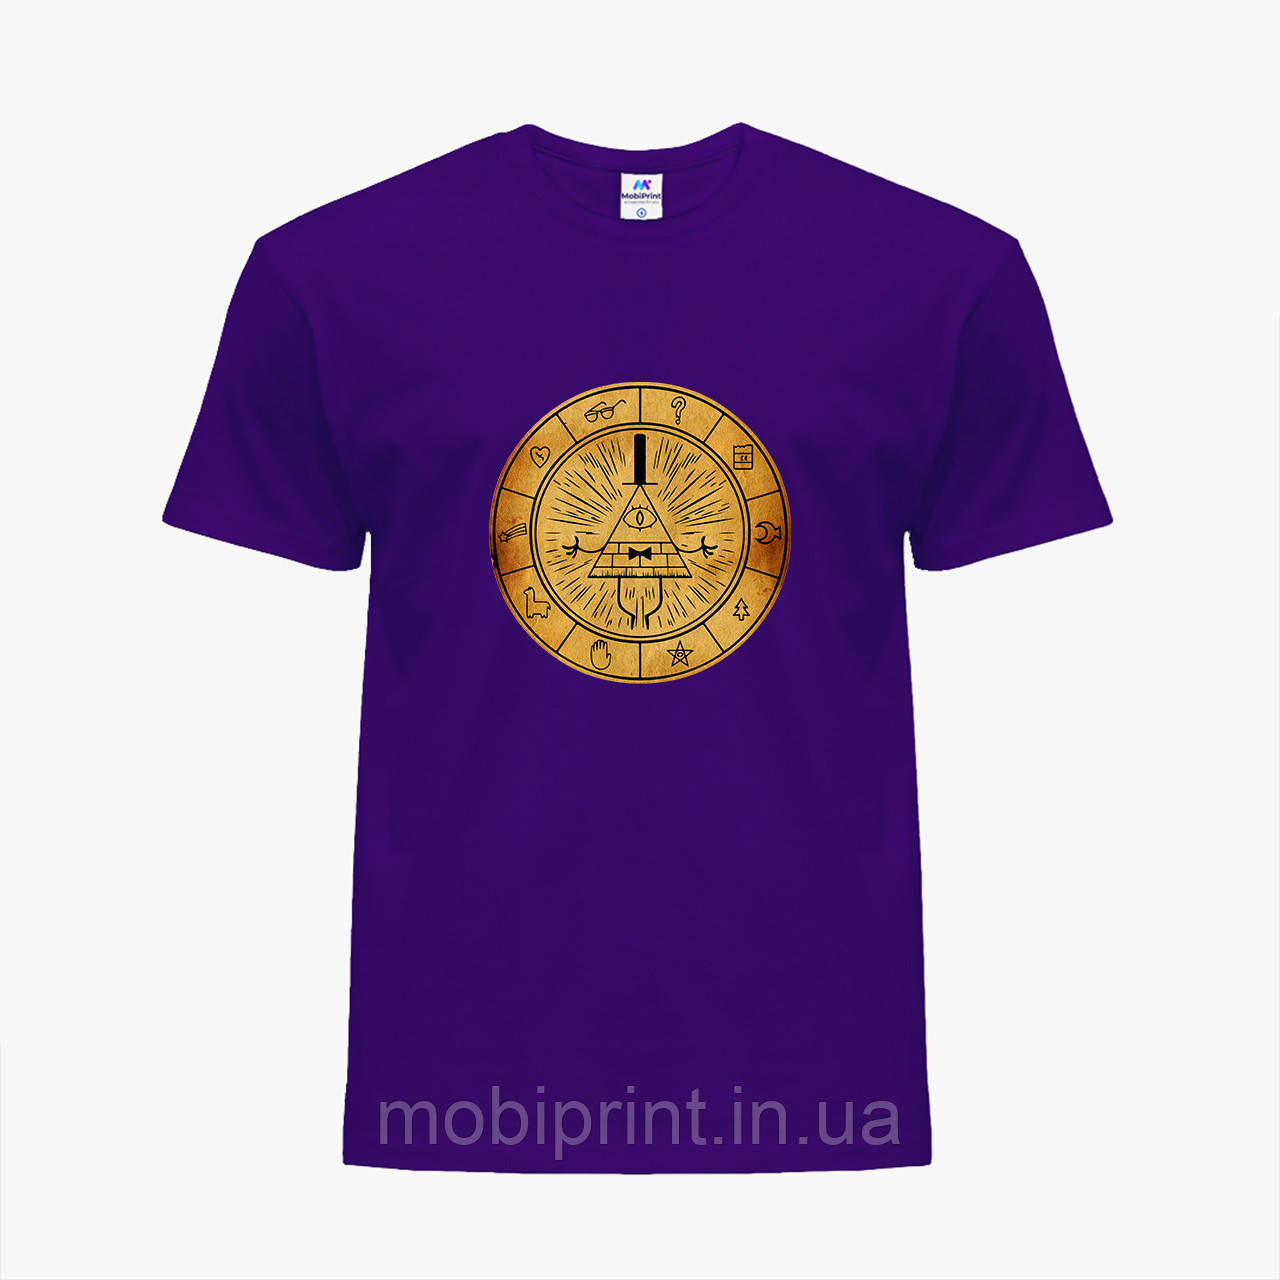 

Детская футболка для мальчиков Билл Шифр Гравити Фолз (Bill Cipher Gravity Falls) (25186-2627-PU) Фиолетовый 134